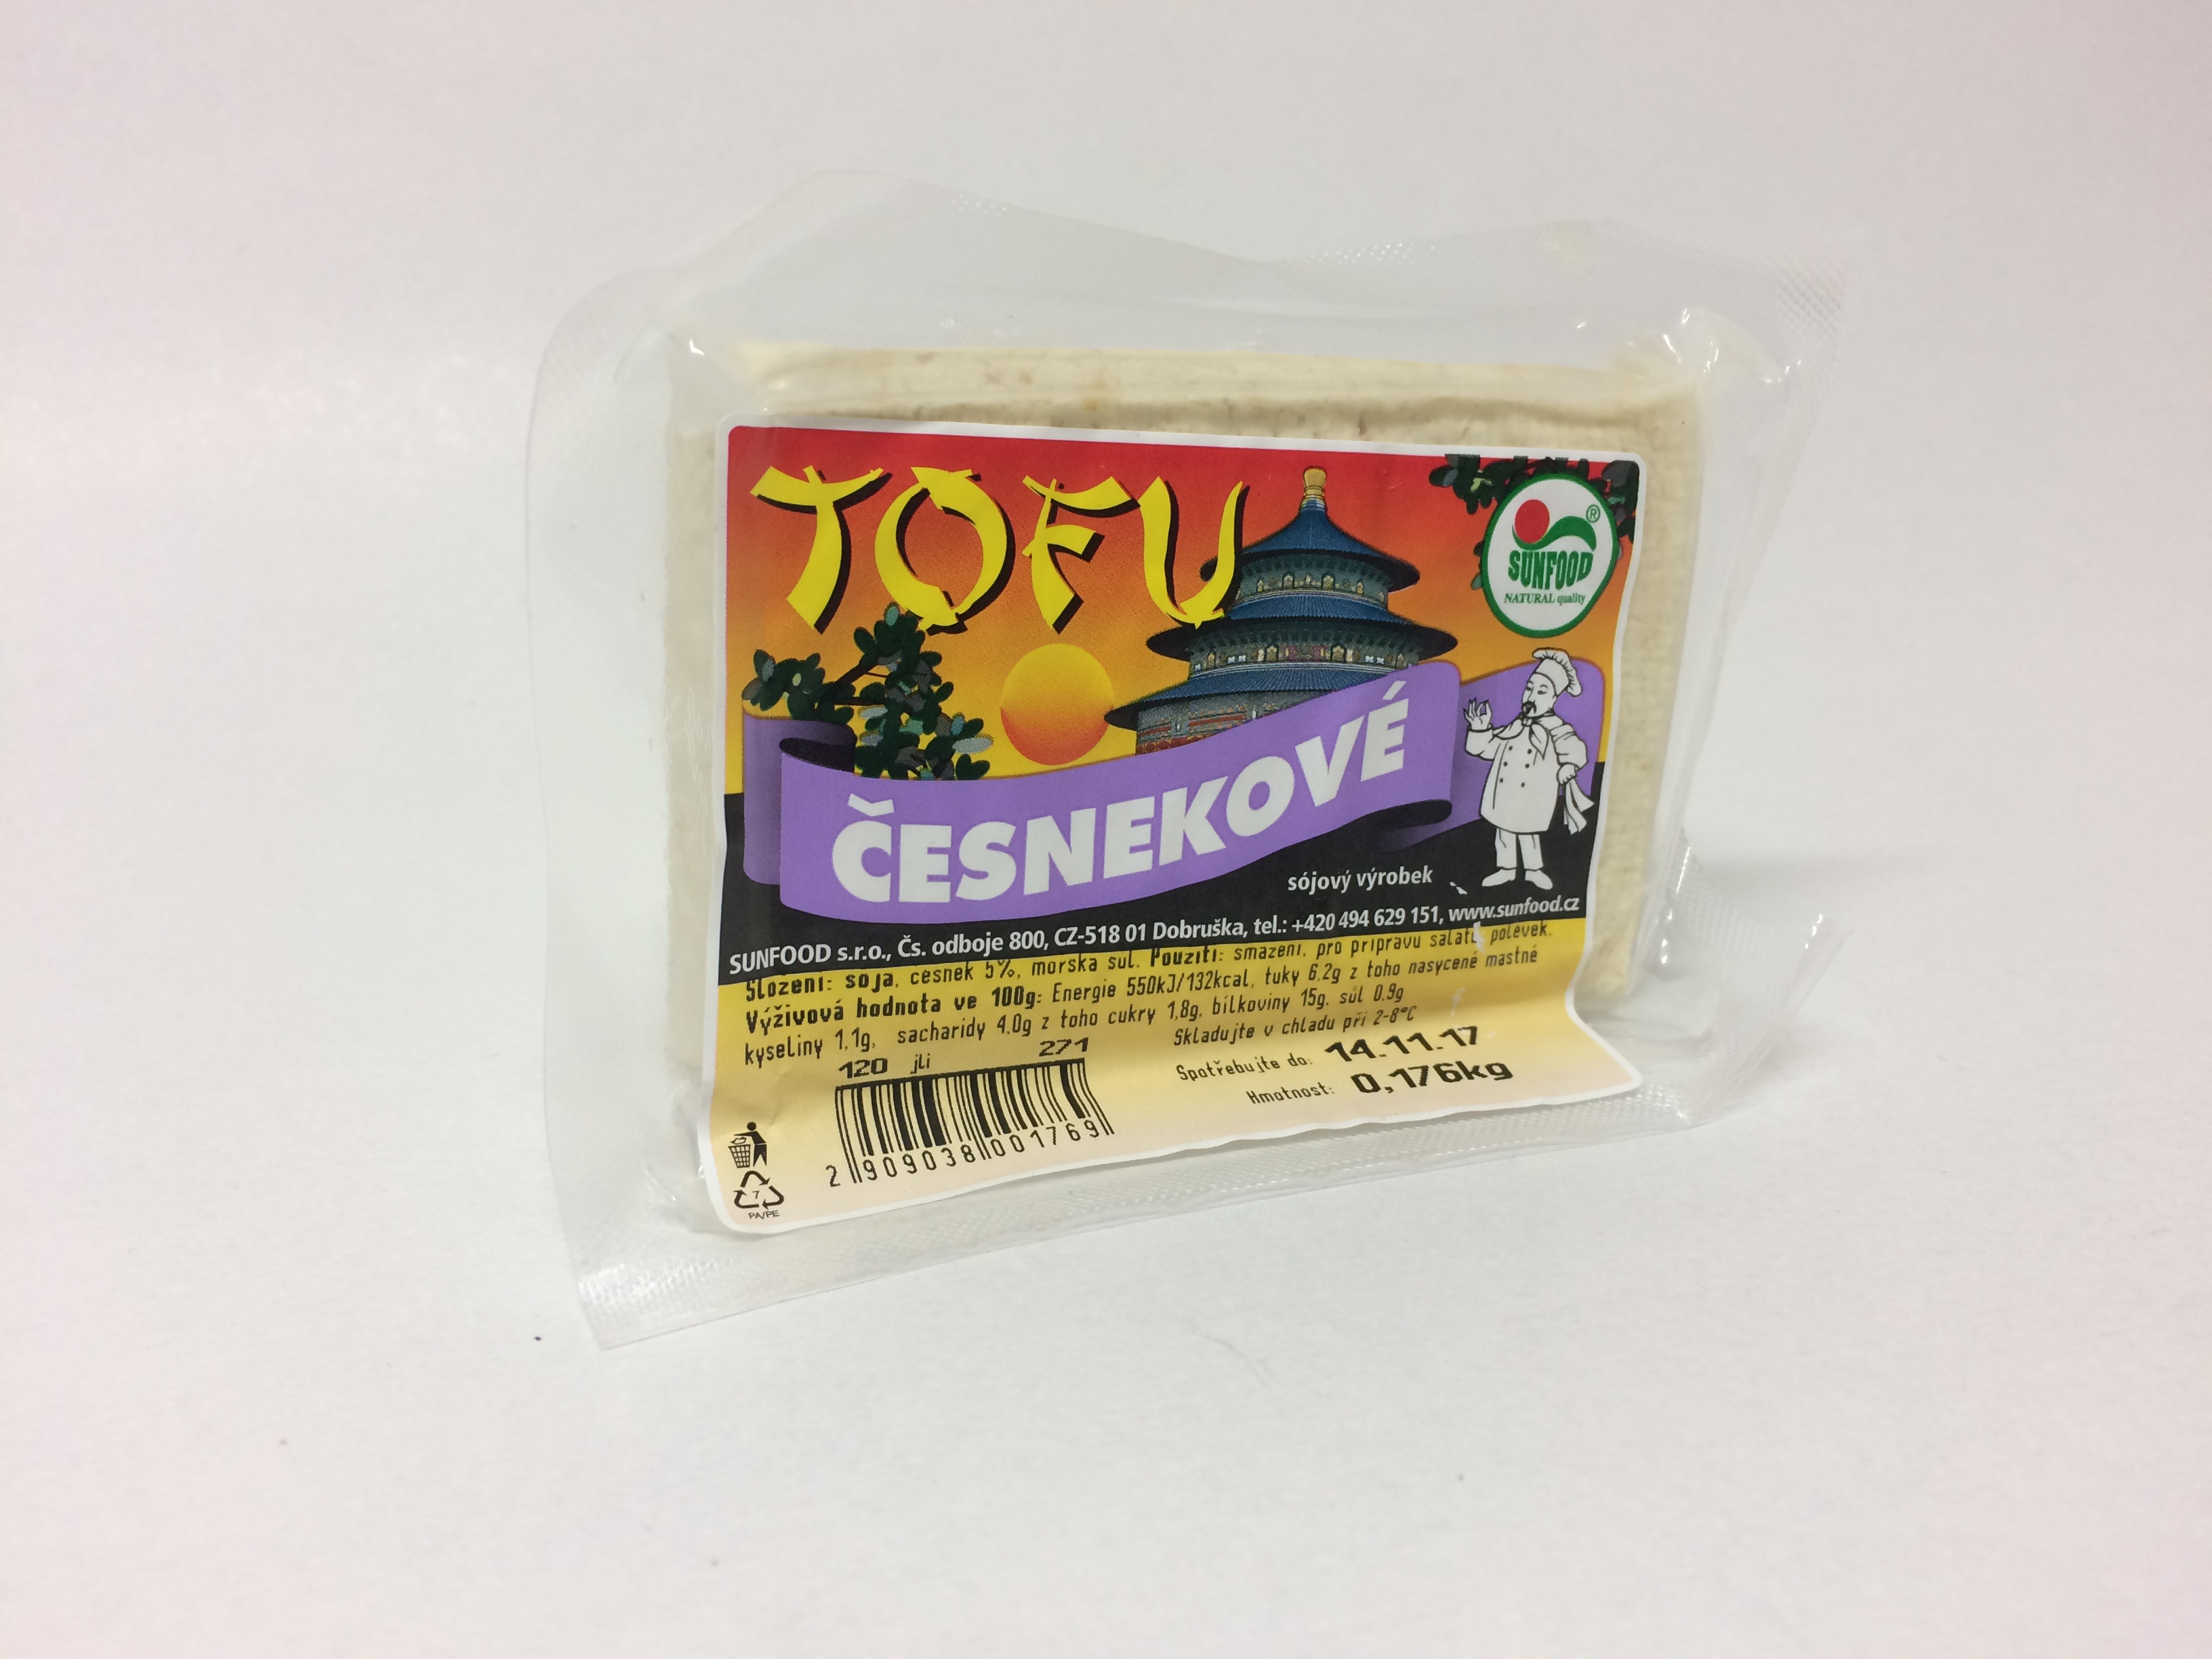 Tofu česnekové váha (1kg)